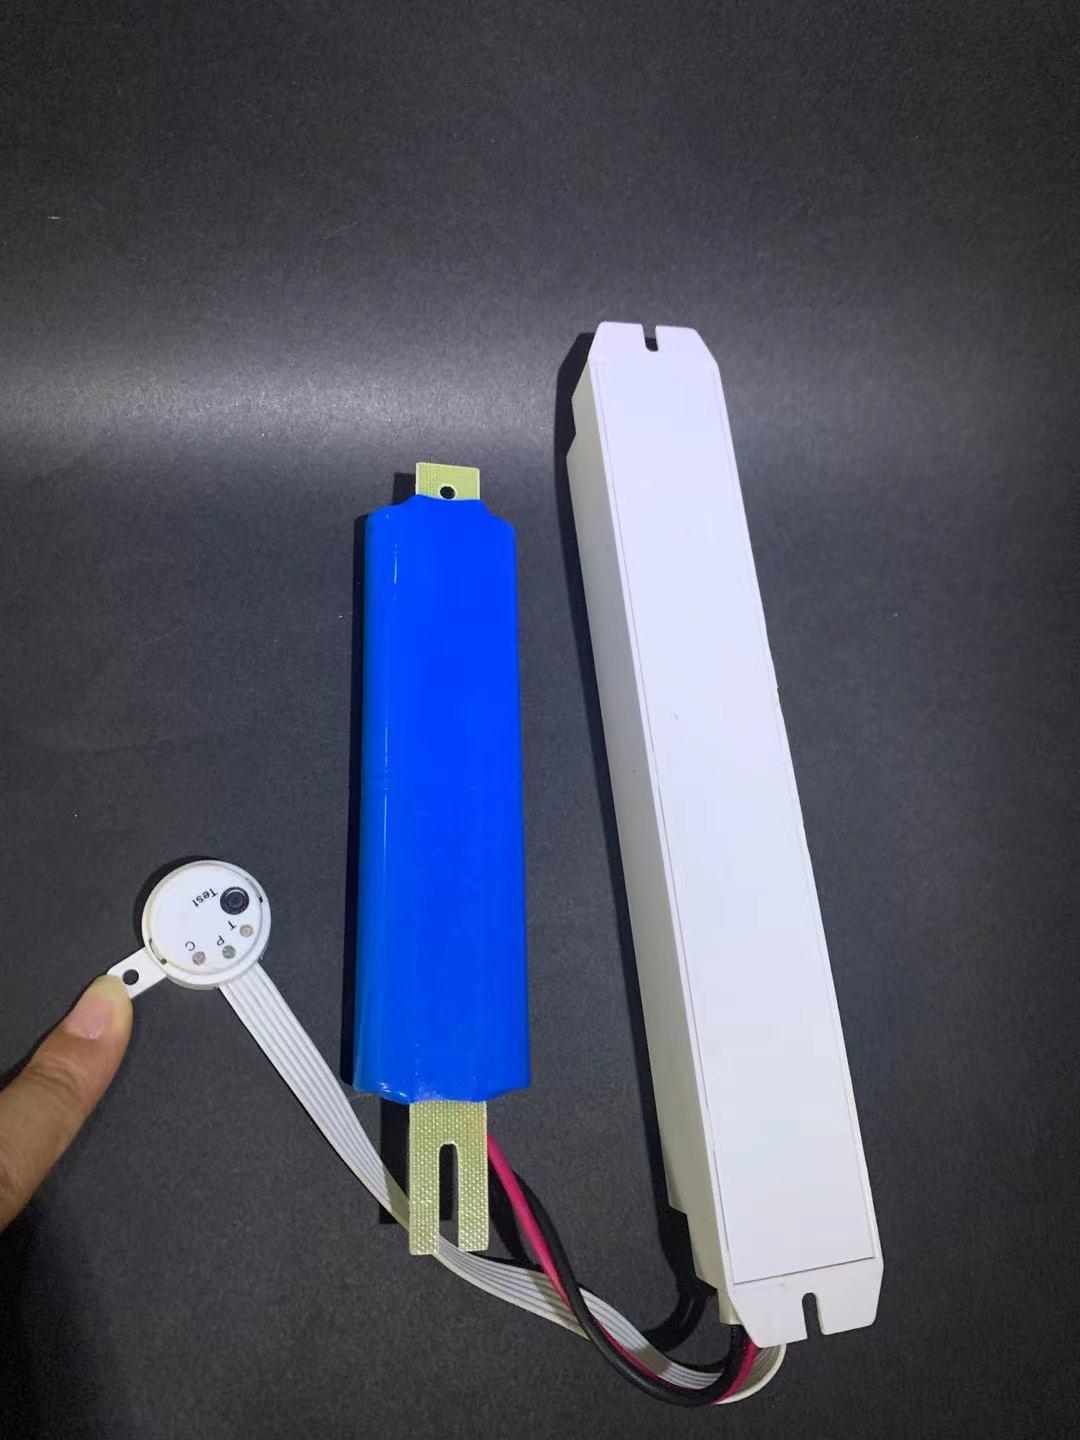 LED-Licht-Notfalltreiber-Kit mit Backup-Batterie für alle LED-Lampen